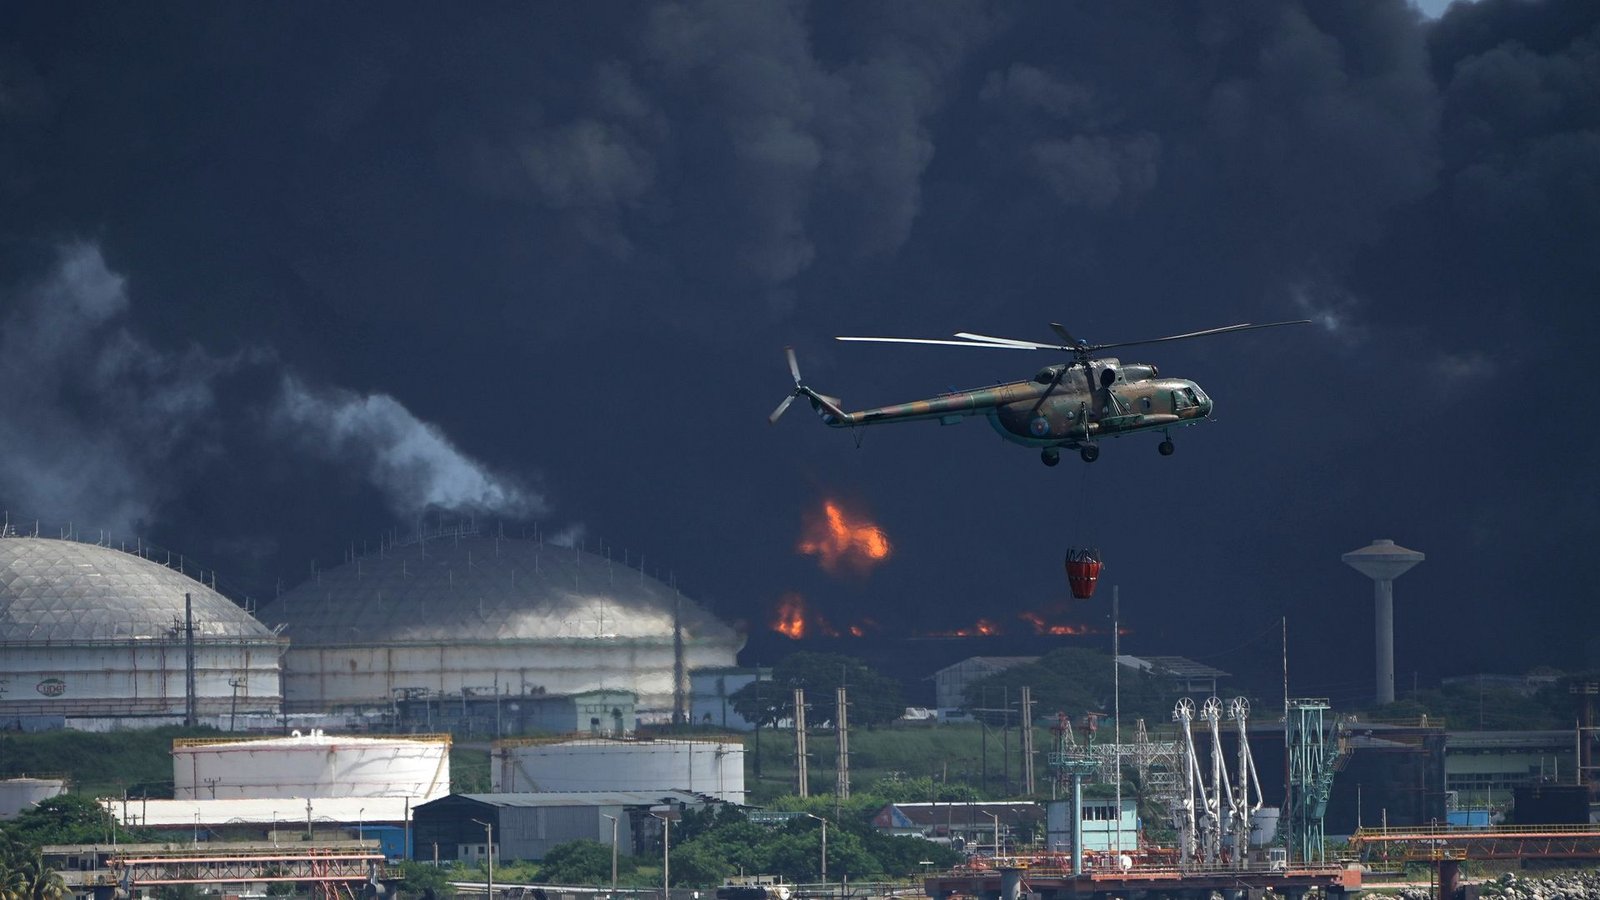 Ein mit Wasser beladener Hubschrauber fliegt über die Supertanker-Basis Matanzas, von der dunkler Rauch und Flammen aufsteigen, während Feuerwehrleute versuchen, den Brand zu löschen.Foto: Ramon Espinosa/AP/dpa